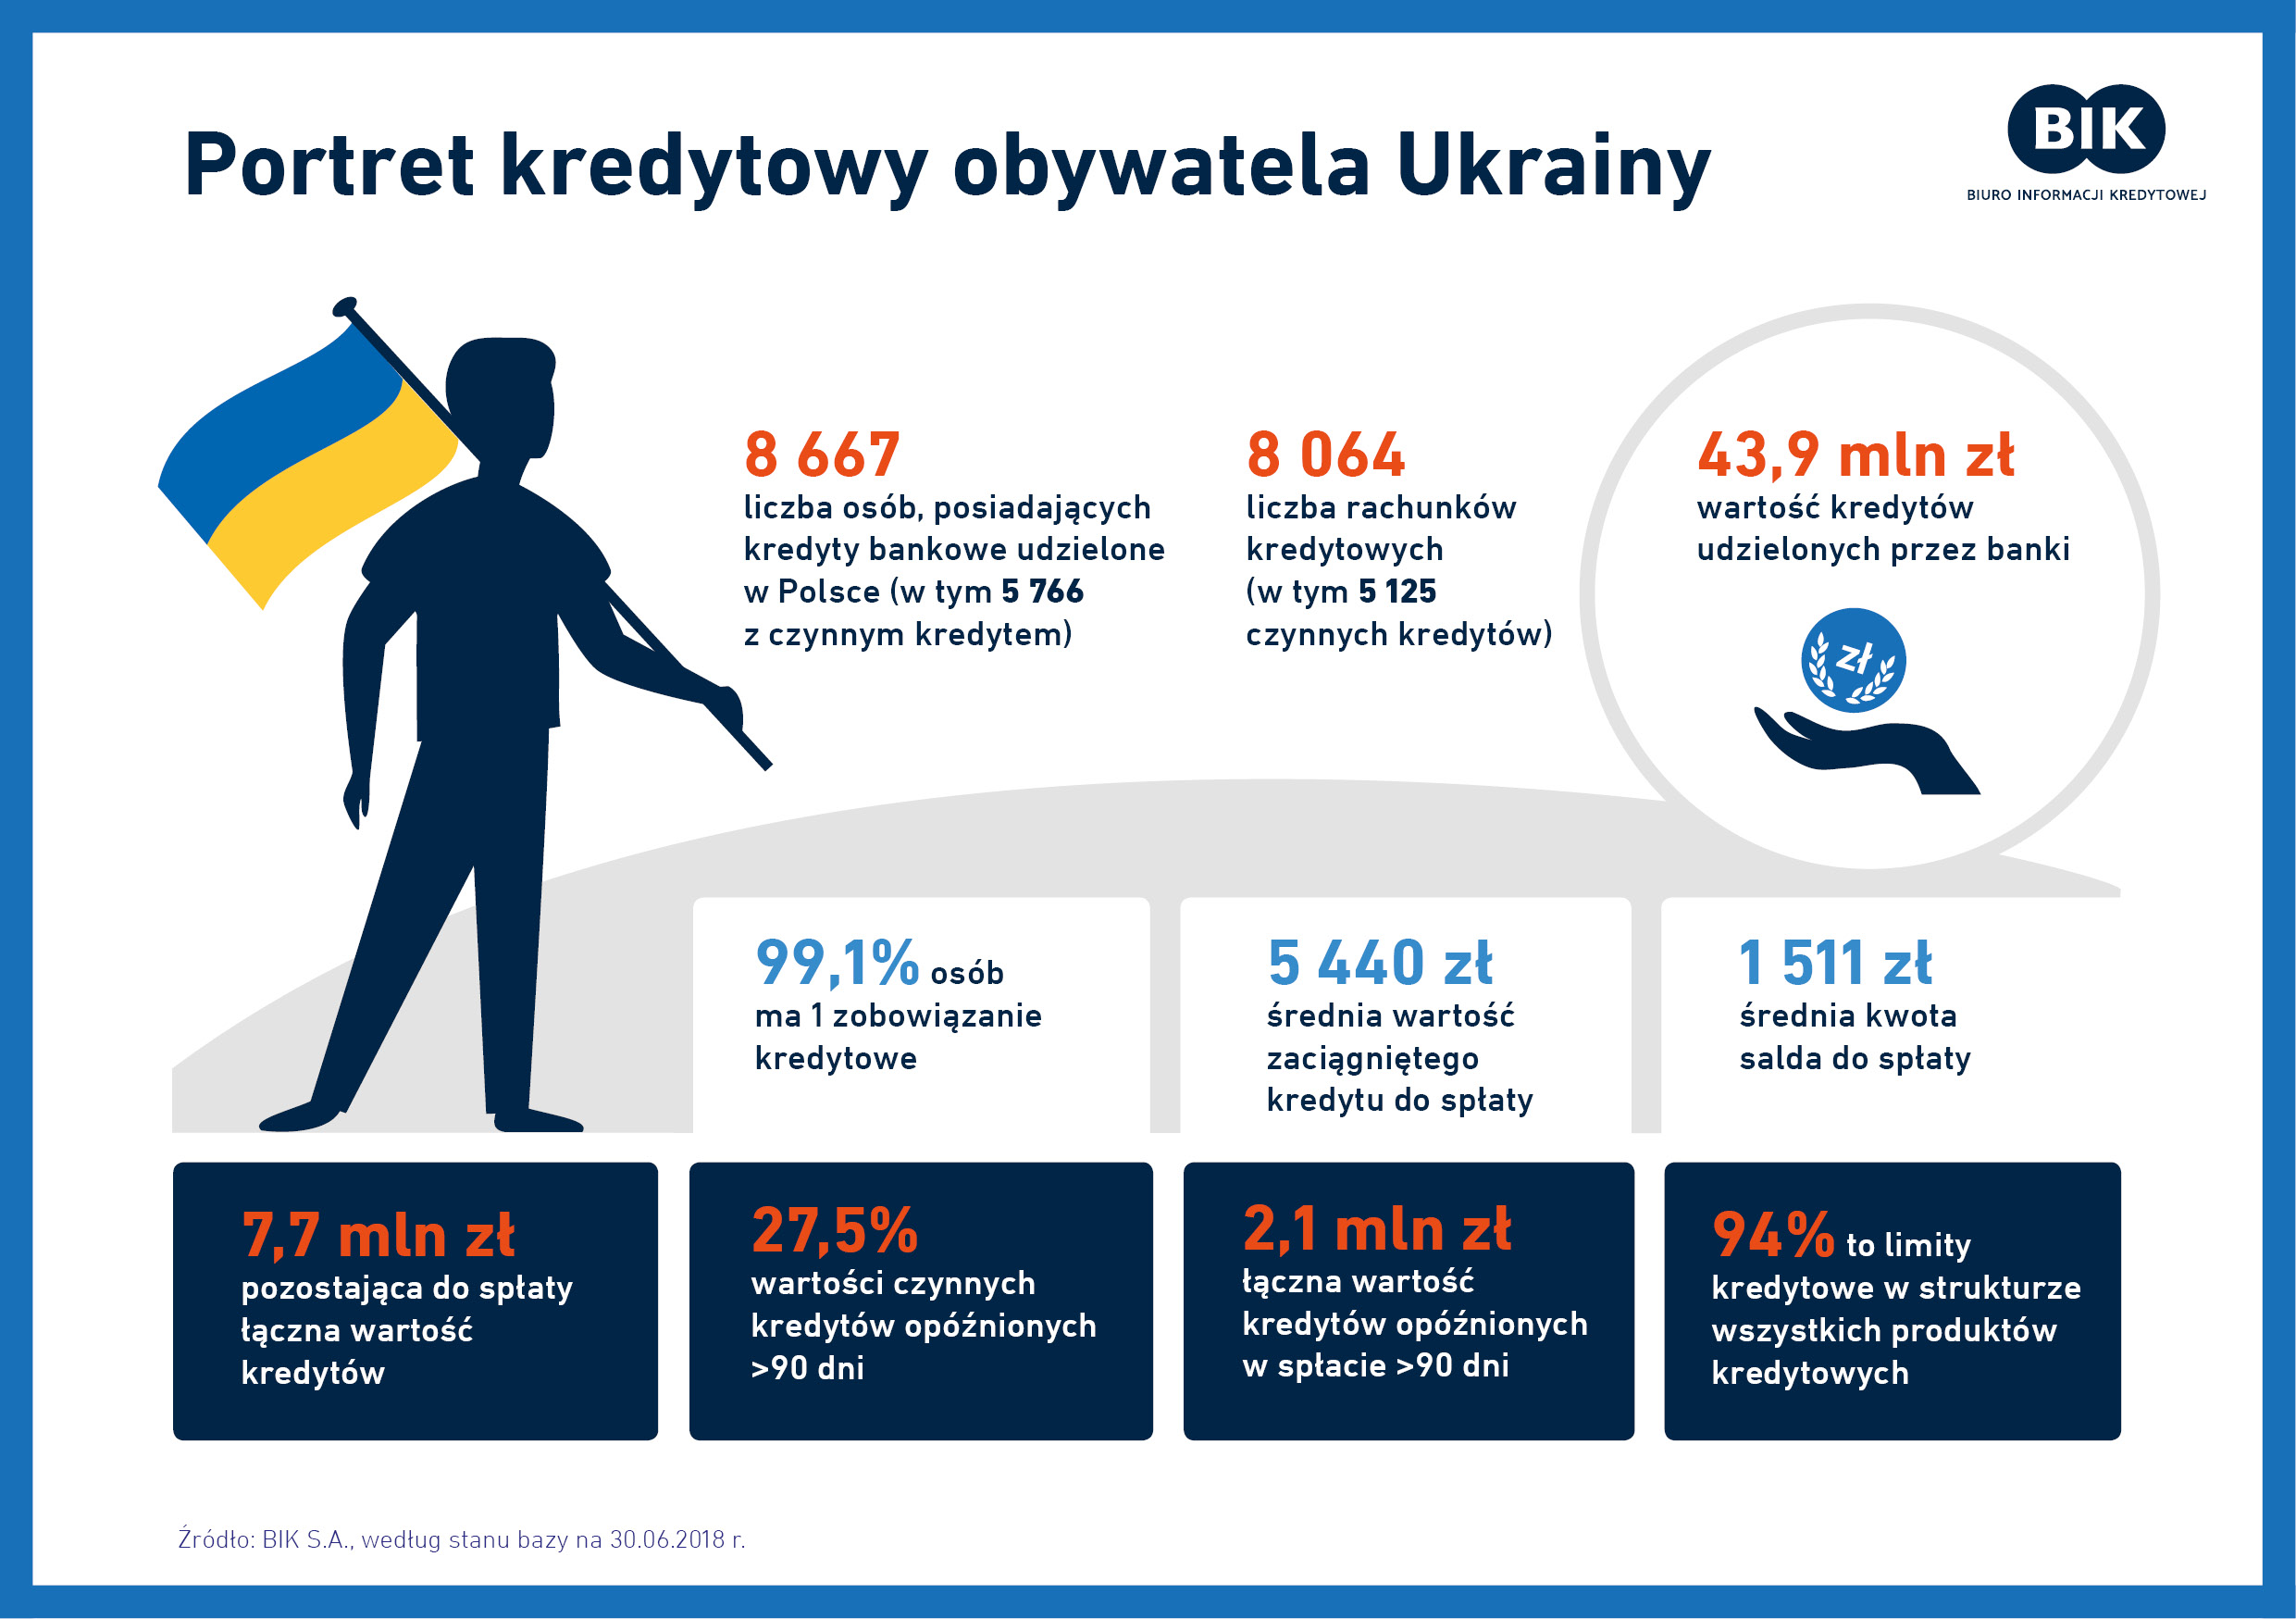 Motyw ukraiński w historii kredytowej